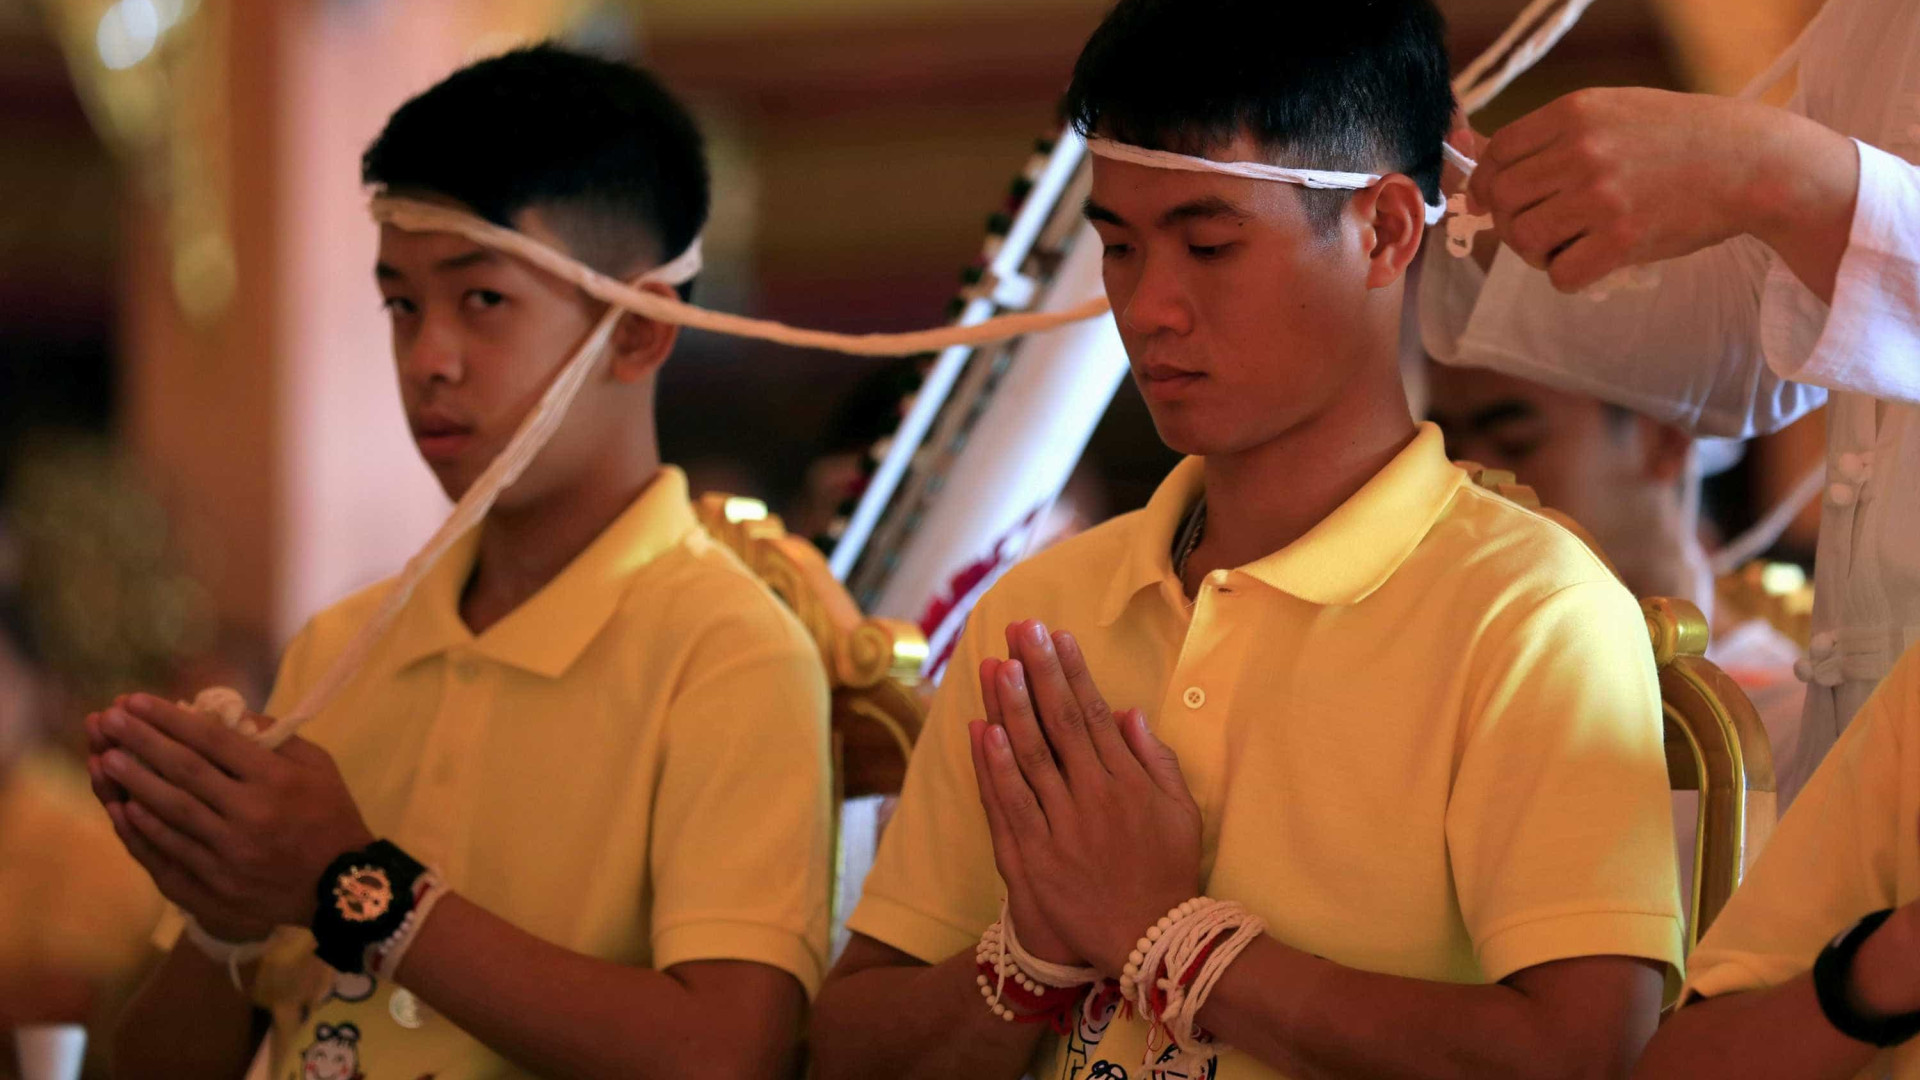 Jovens resgatados de caverna na TailÃ¢ndia viram monges